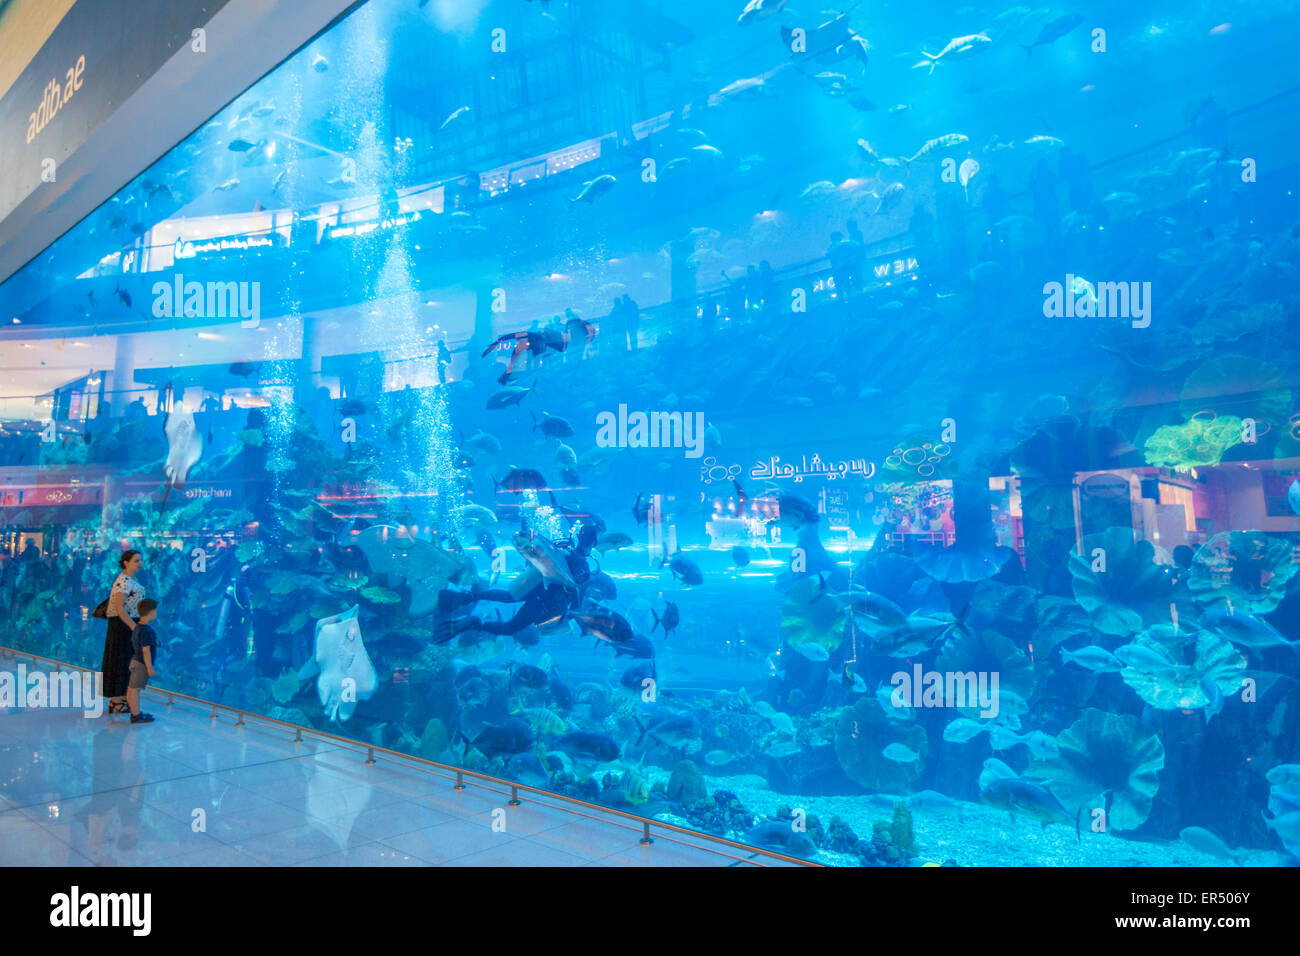 Aquarium de Dubaï, Dubaï Mall, la ville de Dubaï, Émirats arabes unis, ÉMIRATS ARABES UNIS, Moyen Orient Banque D'Images